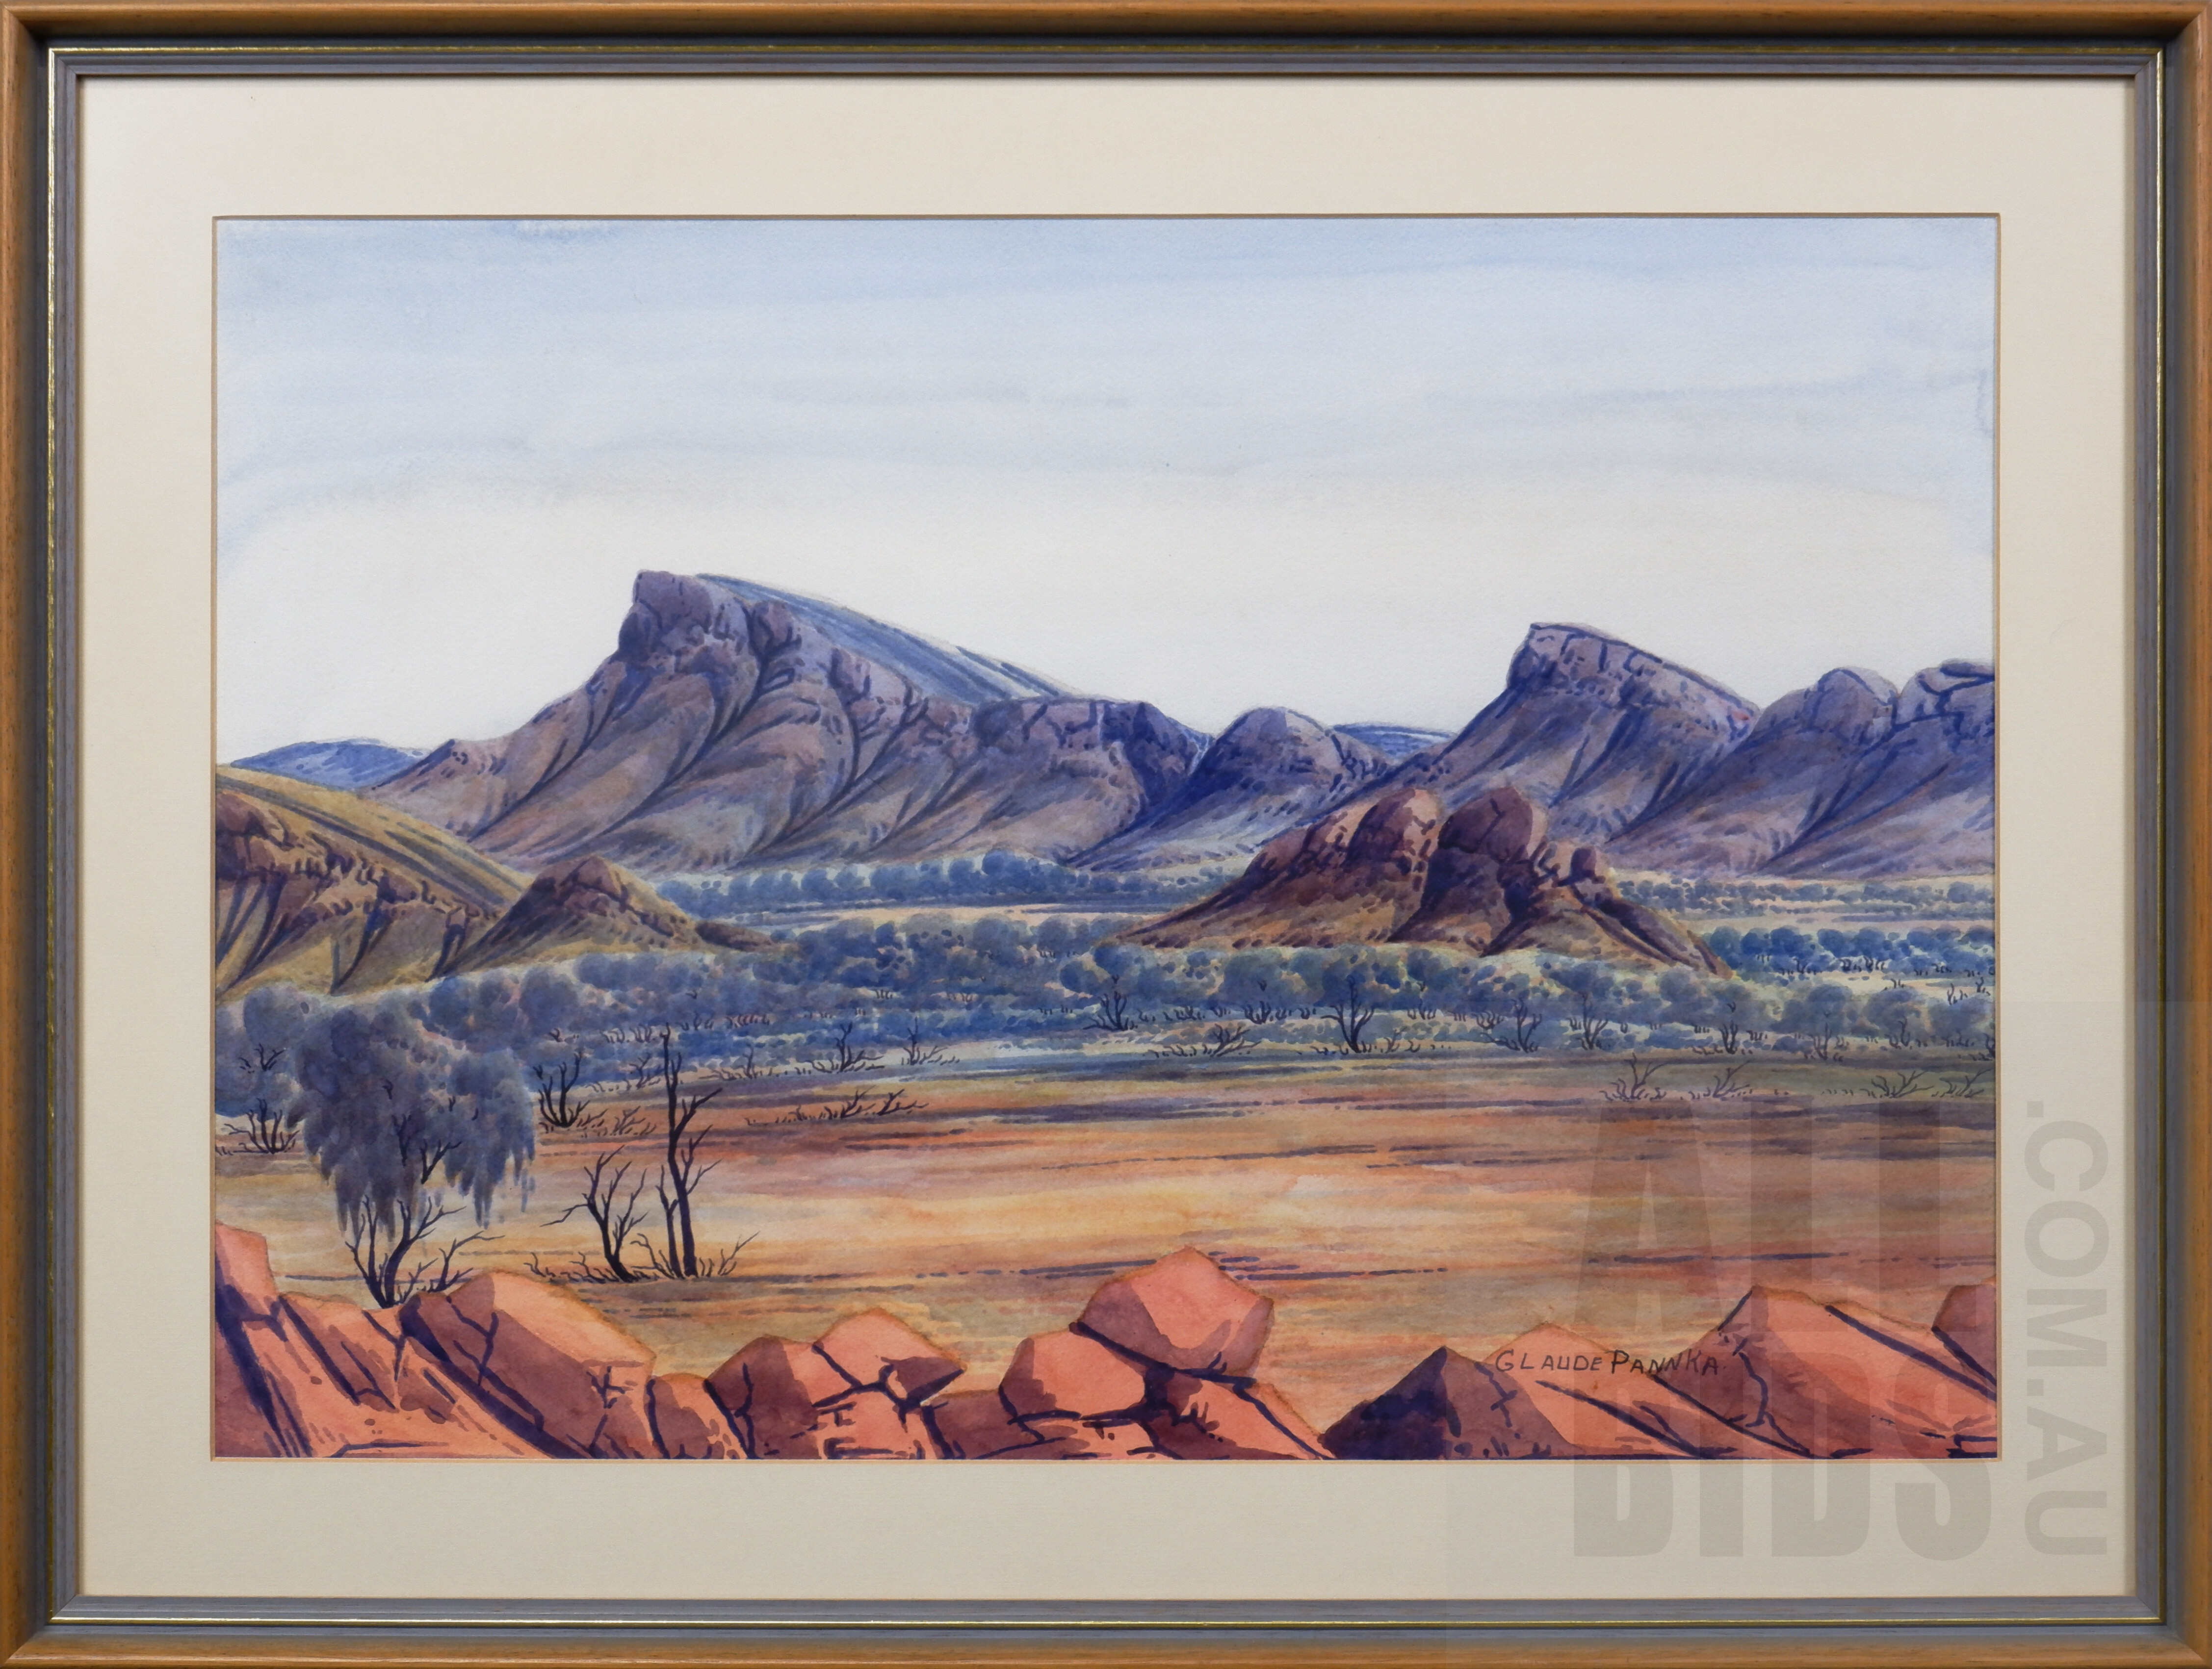 'Claude Pannka (1928-1972), Central Australian Landscape, Watercolour, 35 x 50 cm'